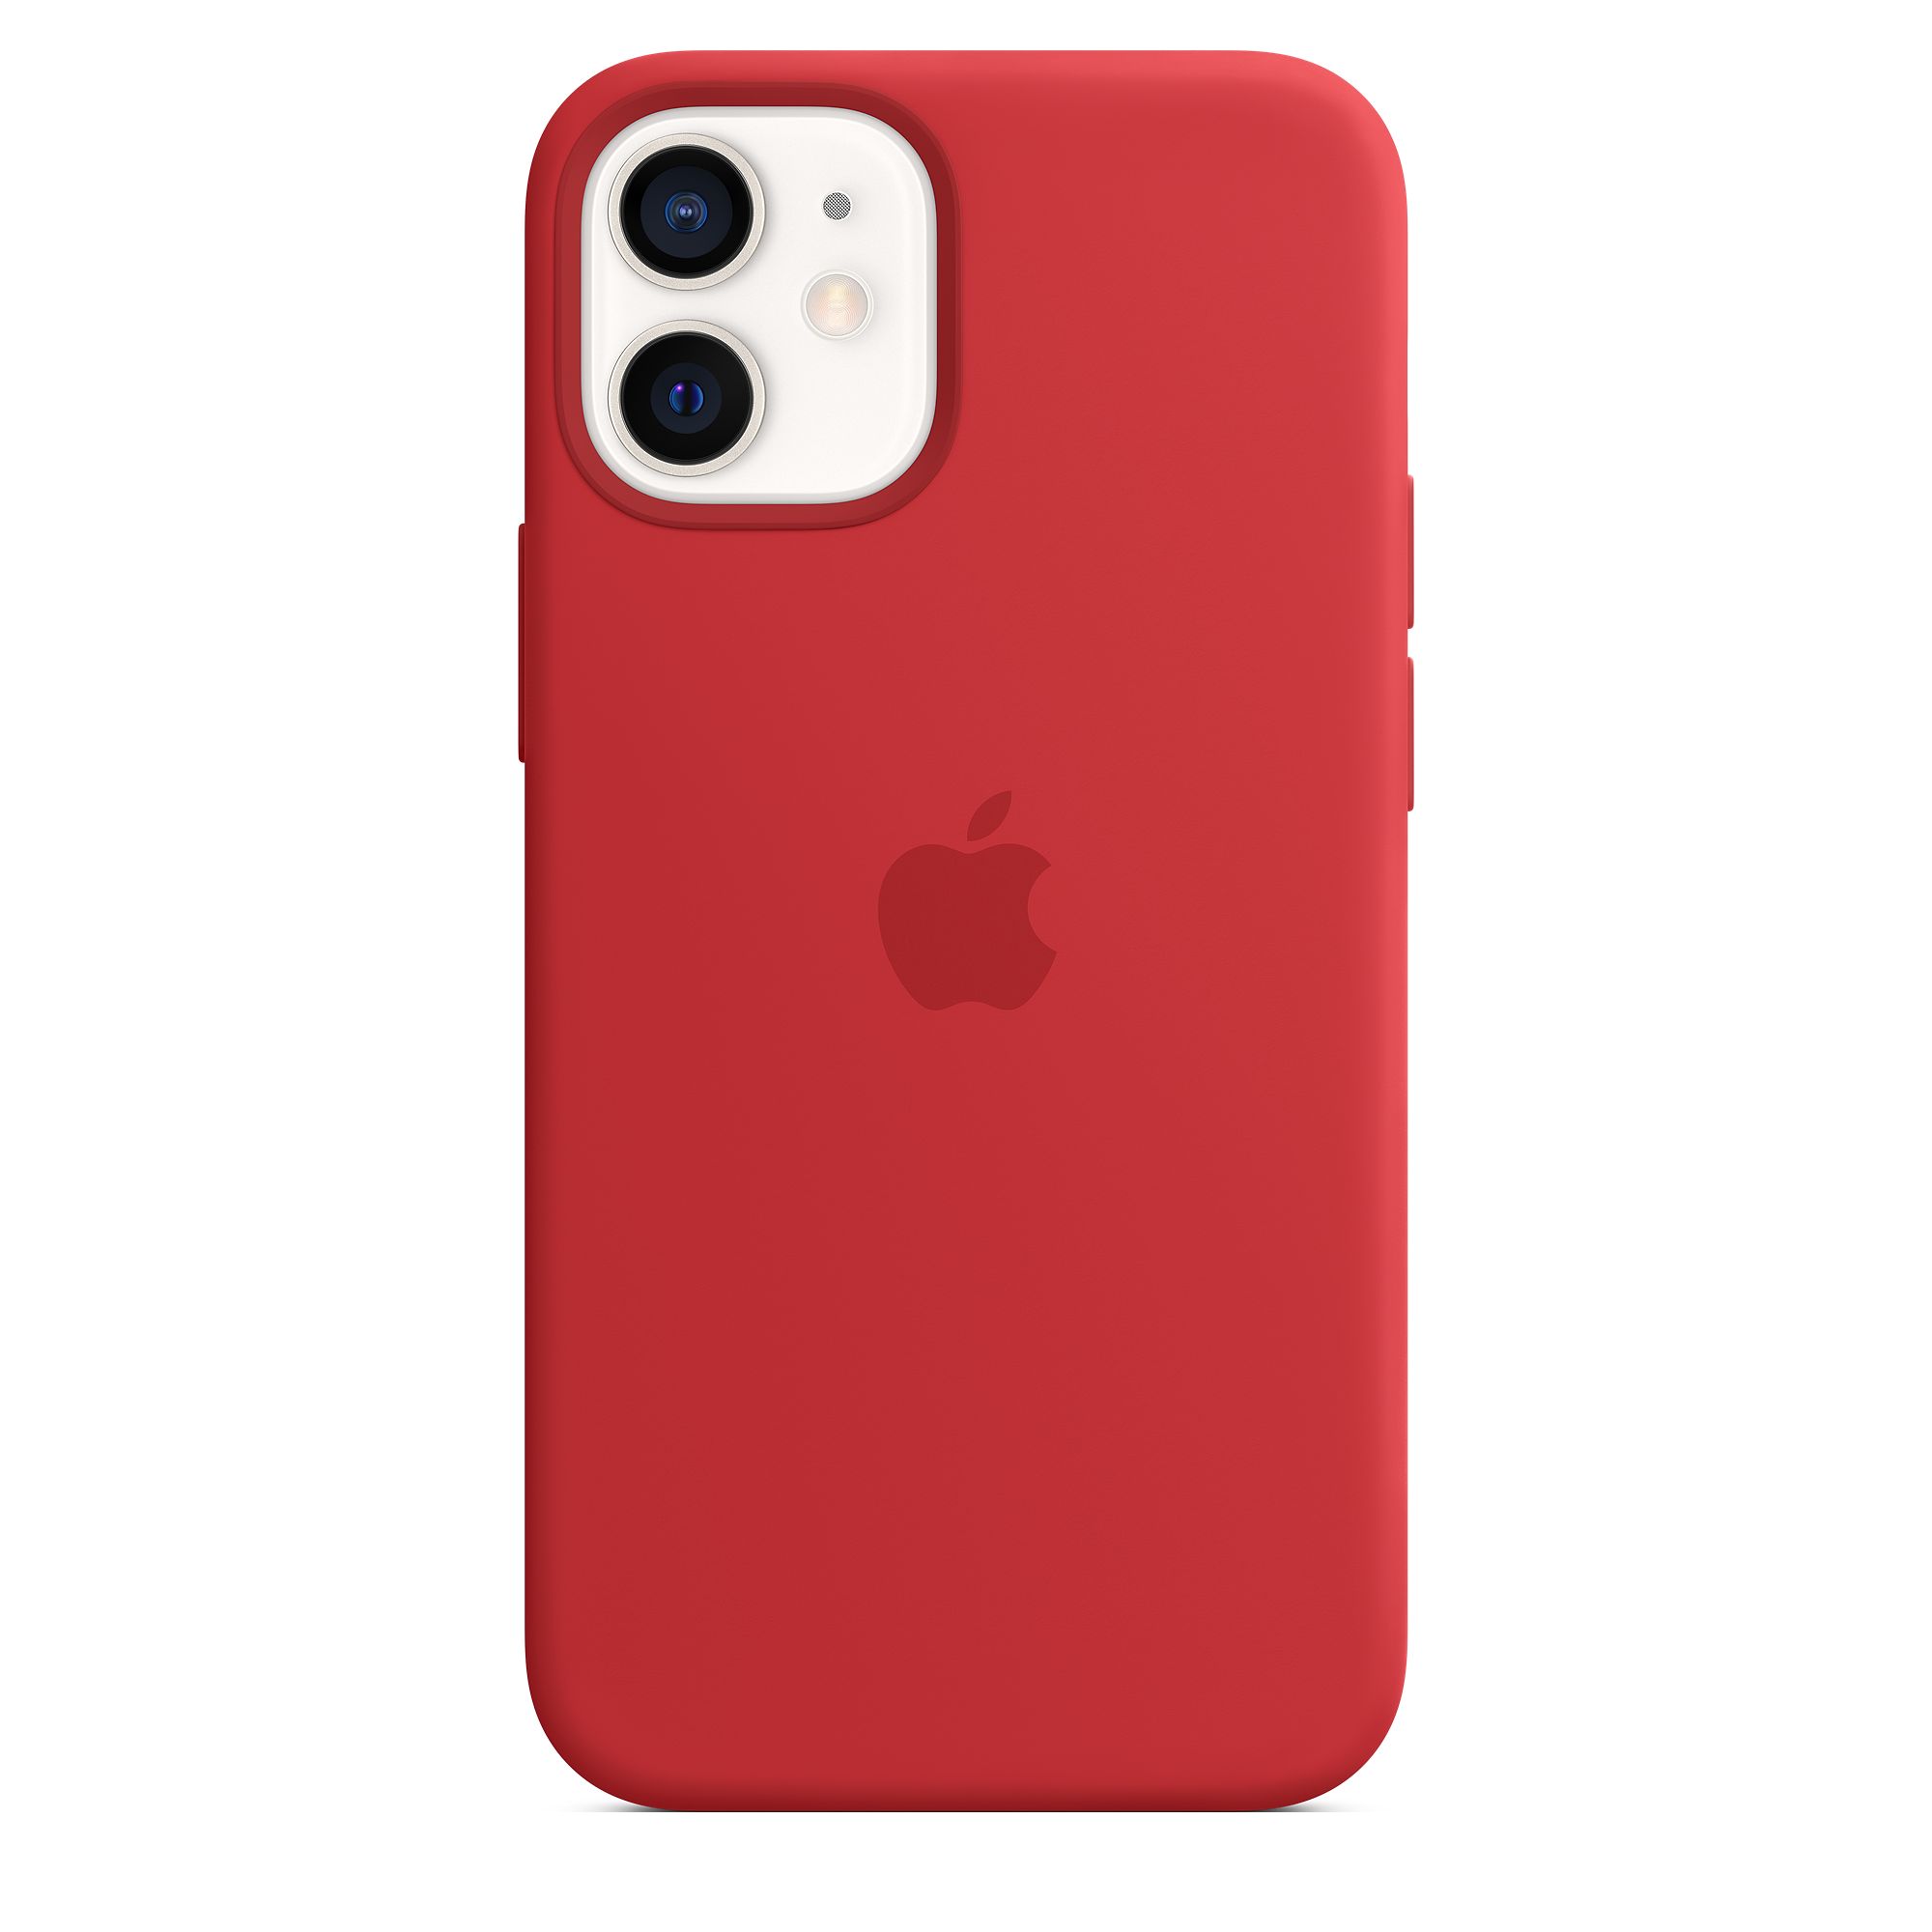 Чехол Apple MagSafe для iPhone 12 mini, силикон, красный (PRODUCT)RED